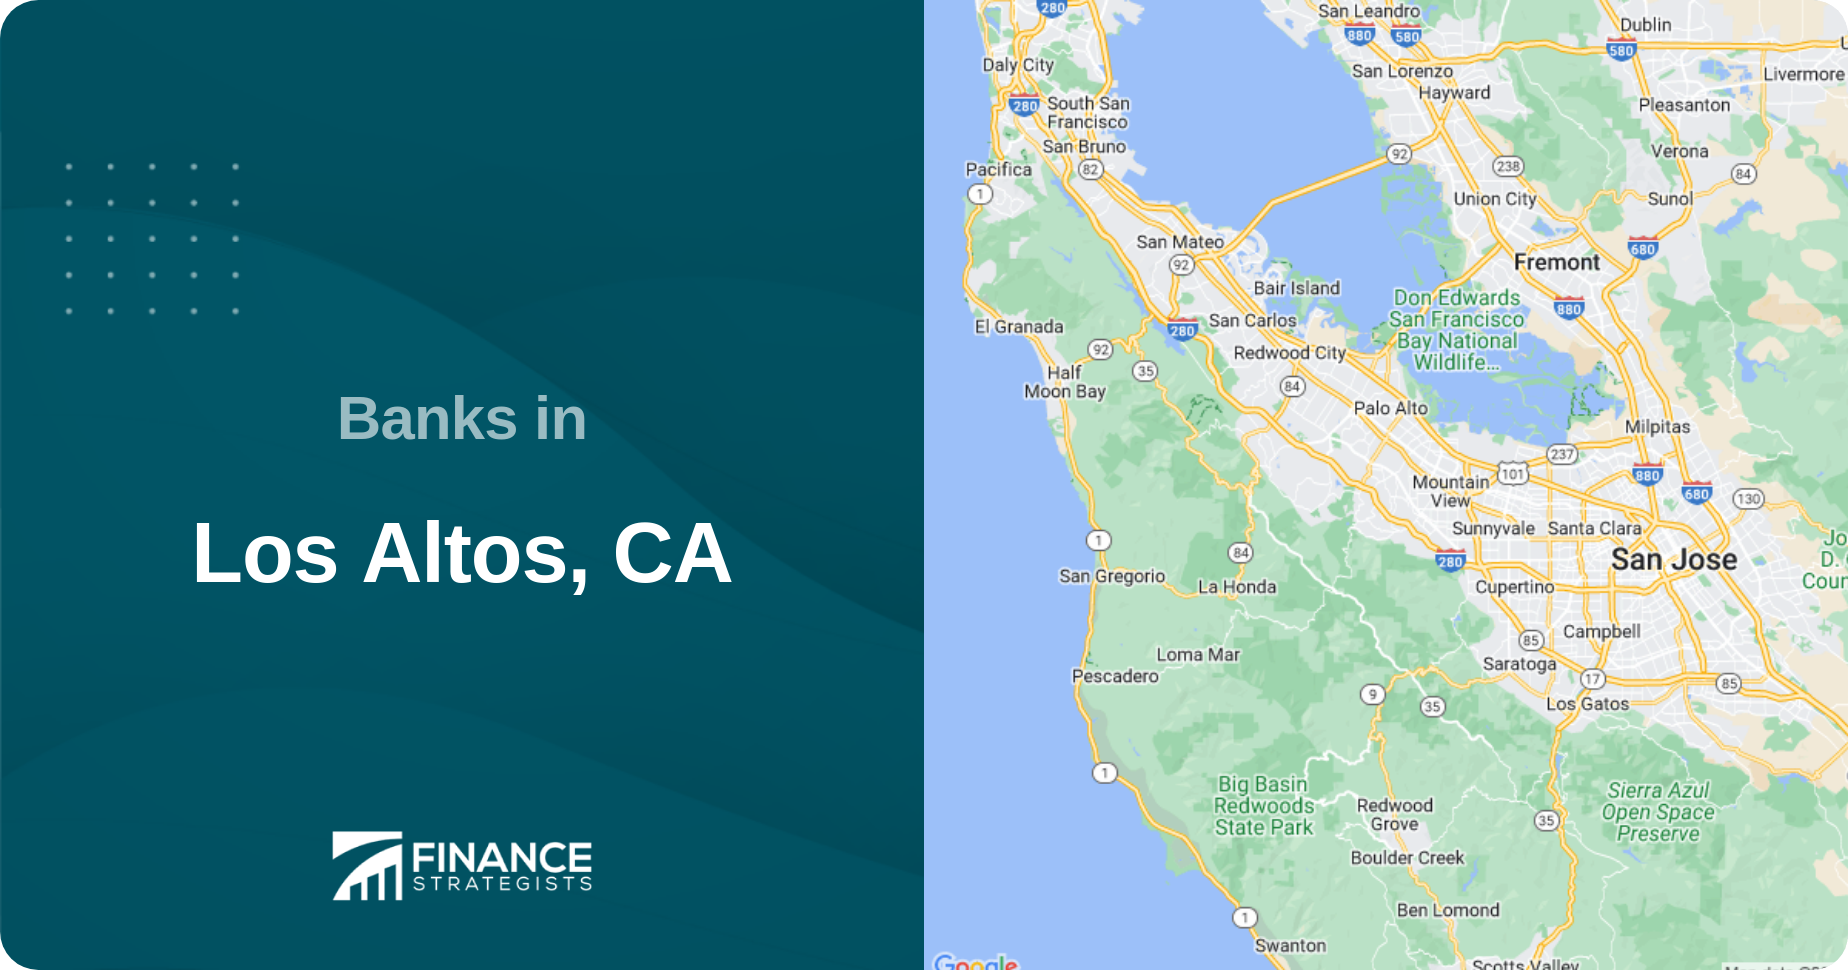 Banks in Los Altos, CA